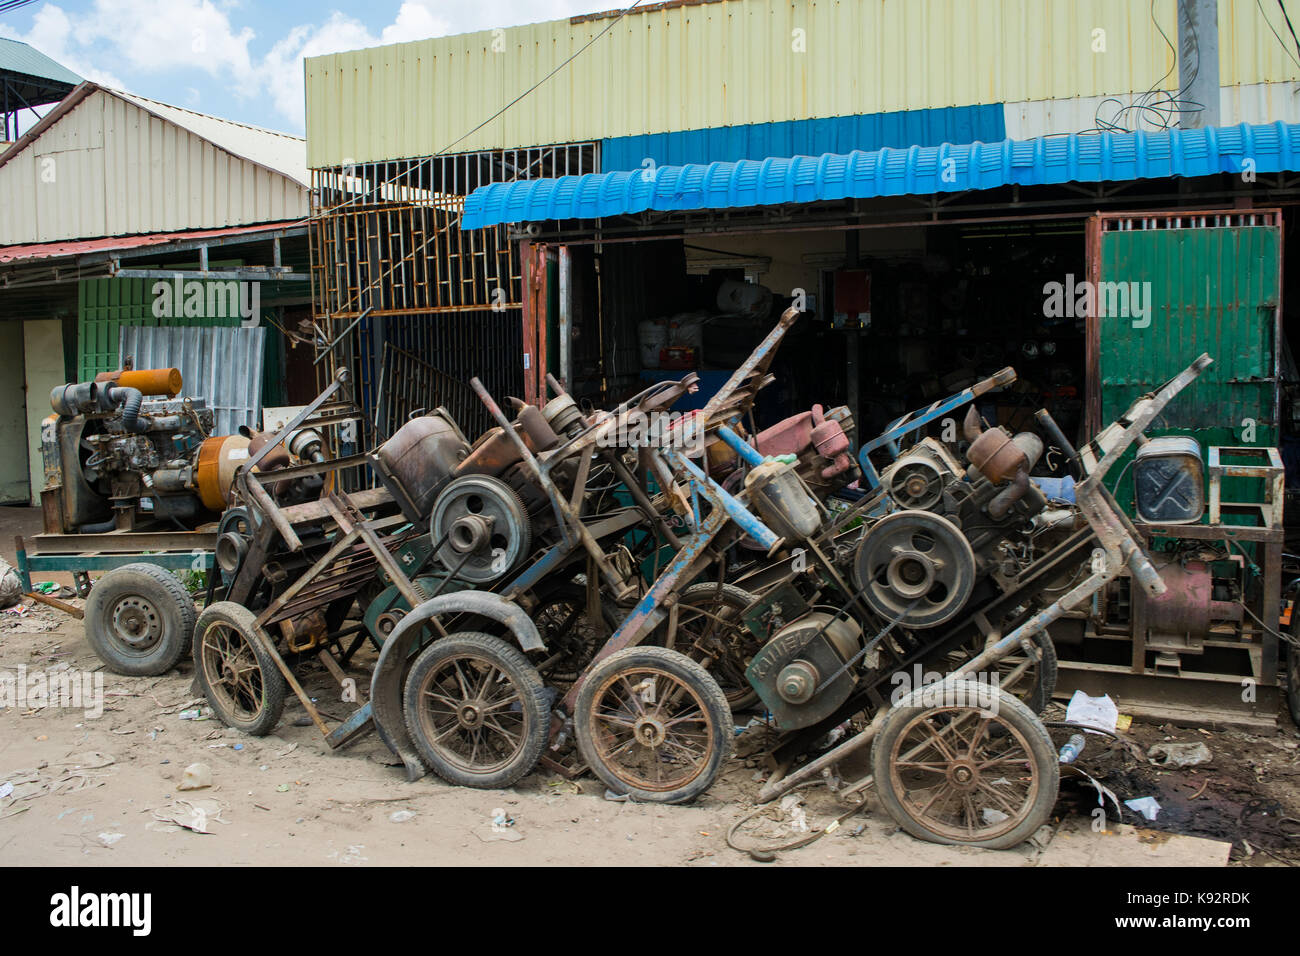 Ein Mechaniker in der Garage und Werkstatt, mit Aus, um Motoren für Reparaturen und Wartung außerhalb. Phnom Penh Kambodscha, Südostasien, Indochina Stockfoto